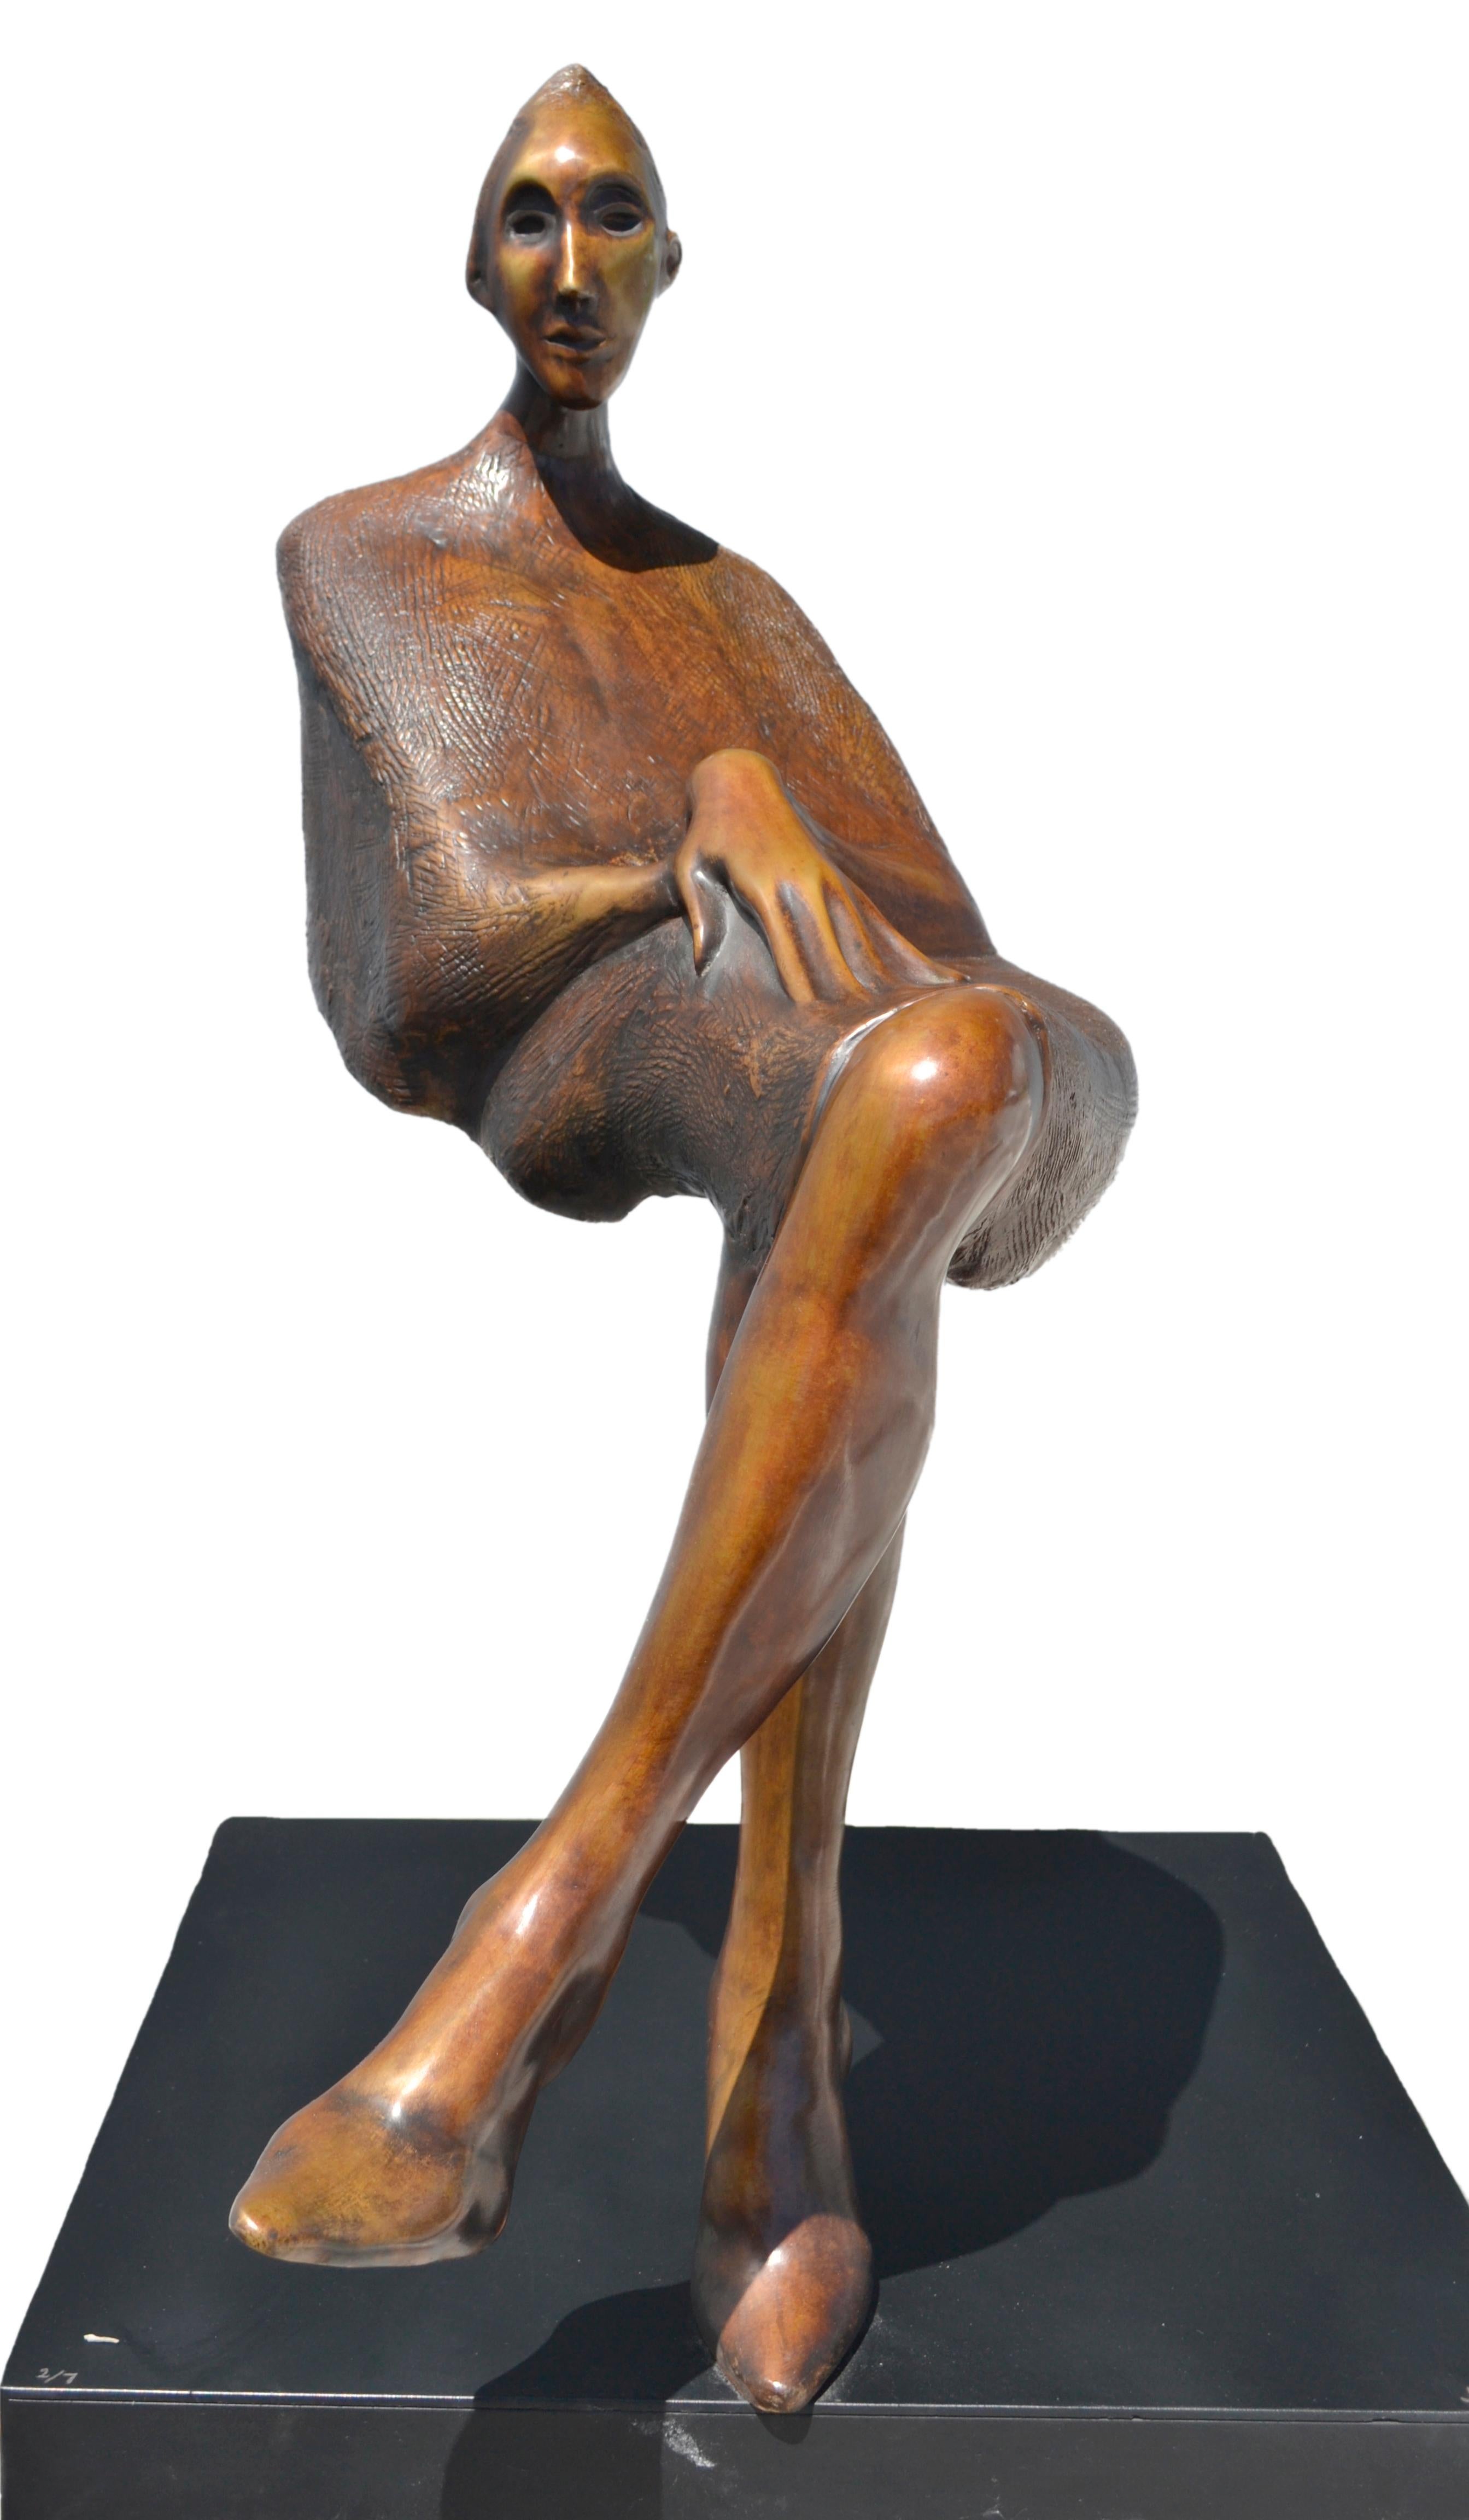  Jorge Segu,  Ilusion silla, 2000, bronze, édition de 7 exemplaires, 78 x 90 x 33 cm  - Contemporain Sculpture par Jorge Seguí 